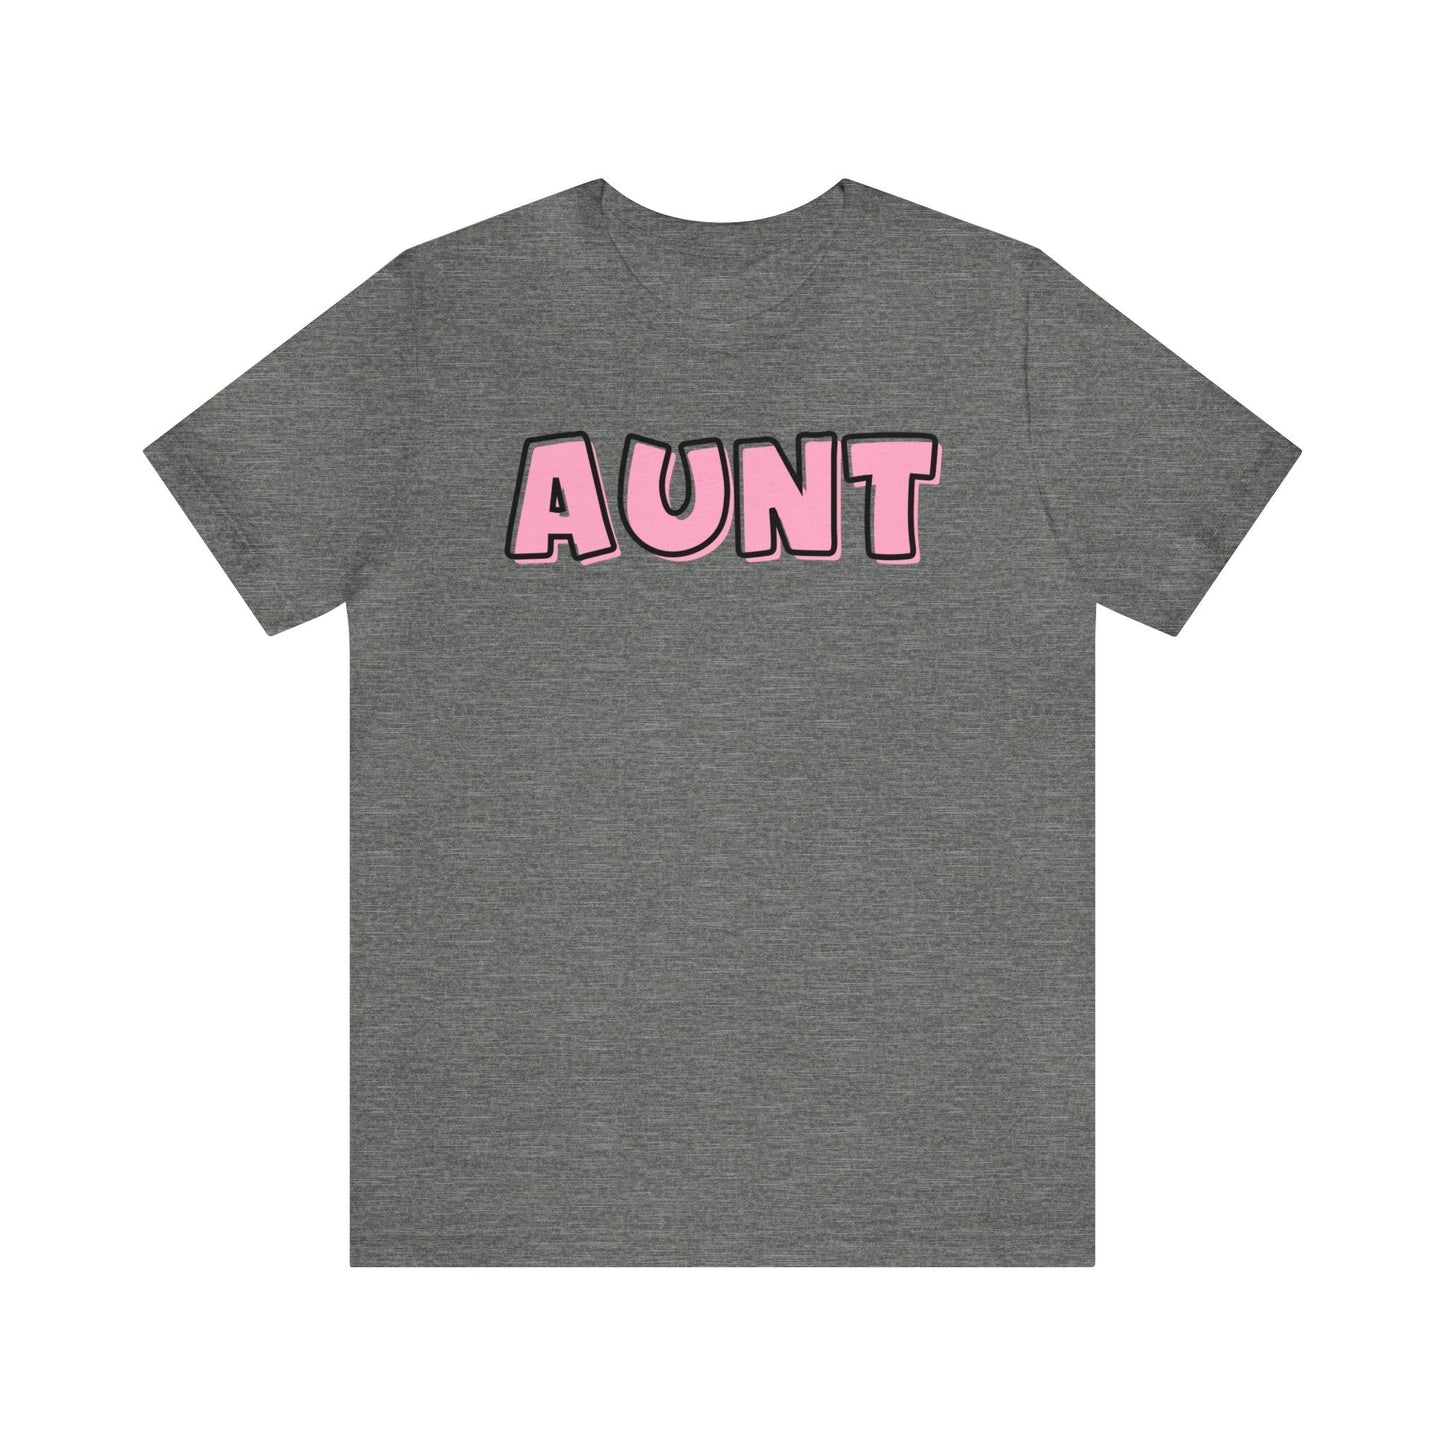 Aunt Shirt - Matching Aunt Bestie - BentleyBlueCo